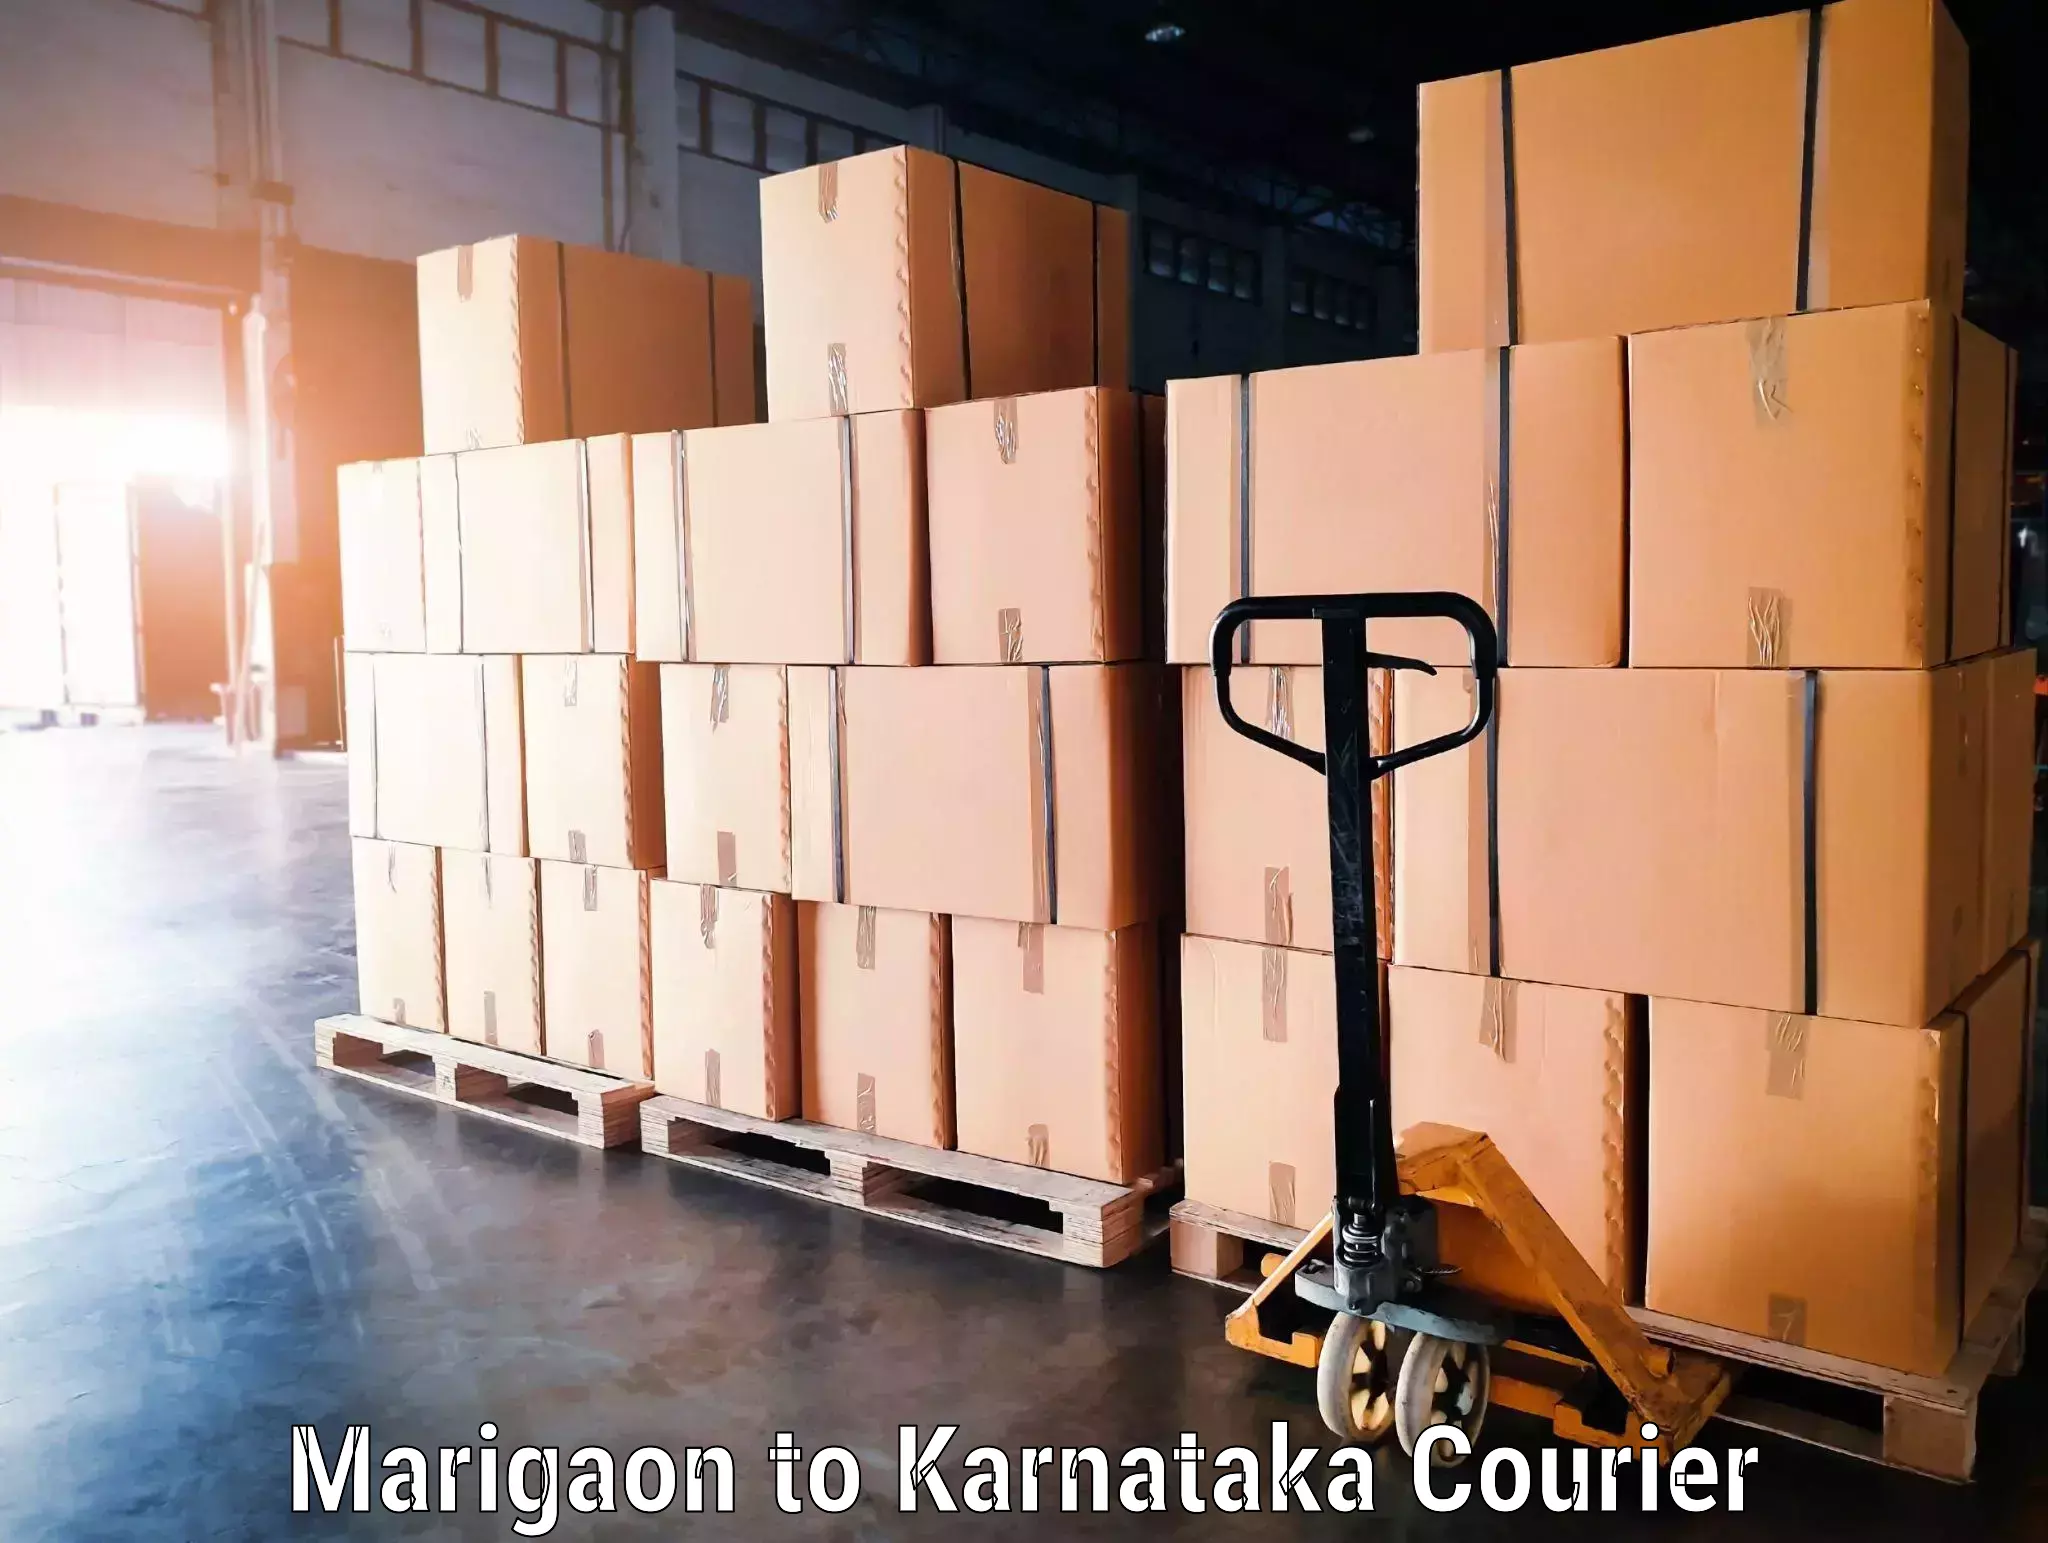 Express luggage delivery Marigaon to Ramanathapura